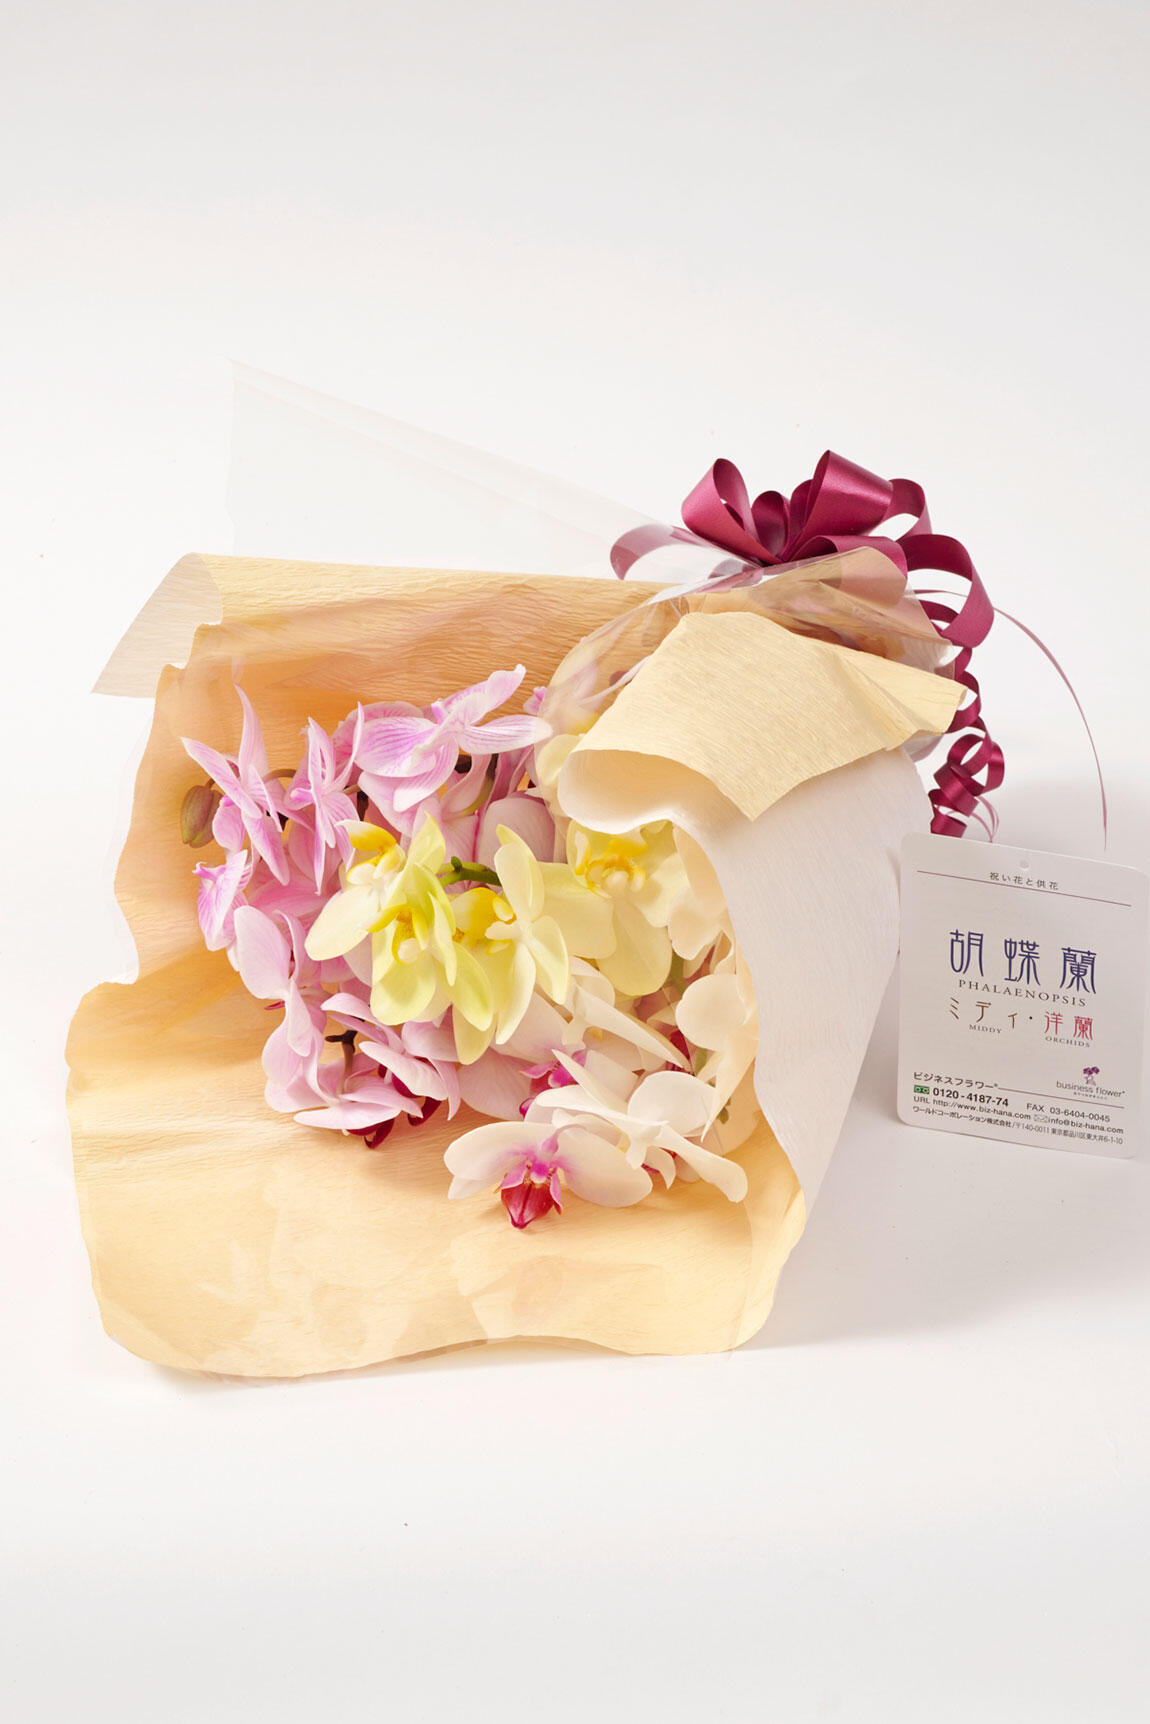 <p>胡蝶蘭はミディサイズの小さめの花束で、フォーマルなビジネスシーンでも贈りやすいお花ながらも大輪胡蝶蘭を贈るには固すぎる場合におすすめです。</p>